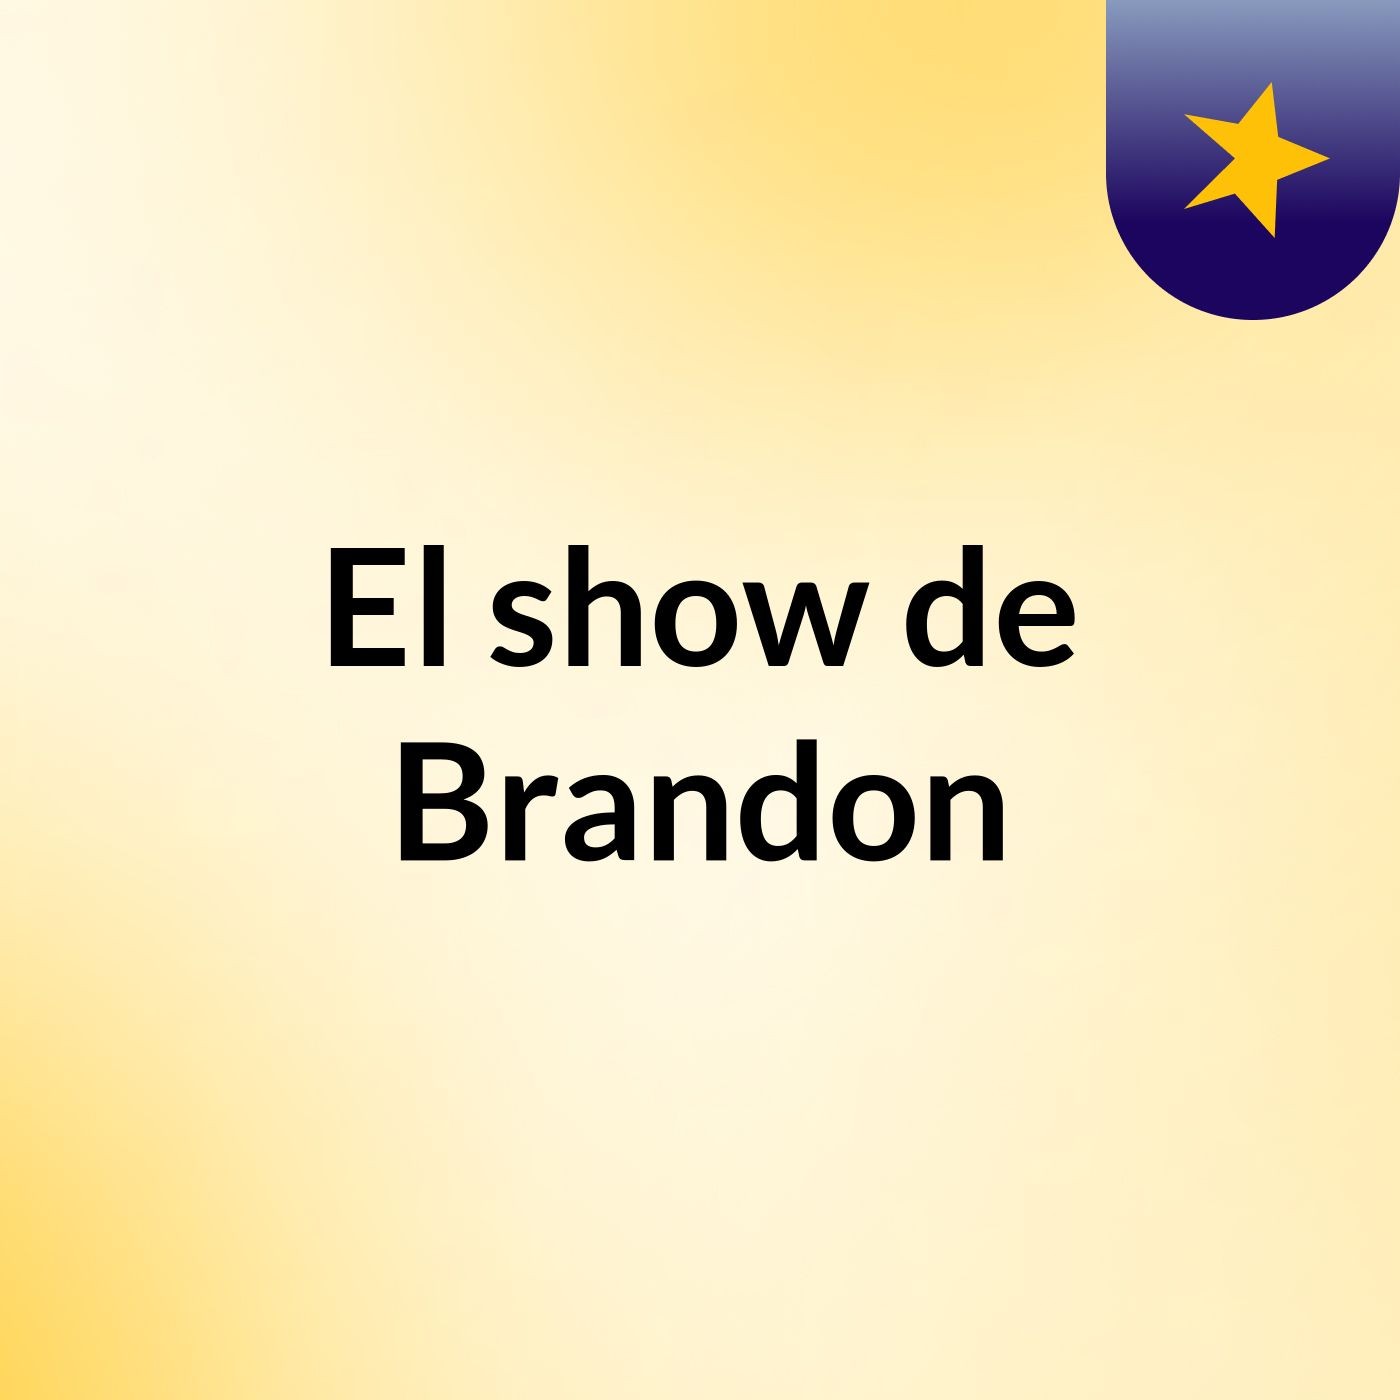 Episodio 2 - El show de Brandon